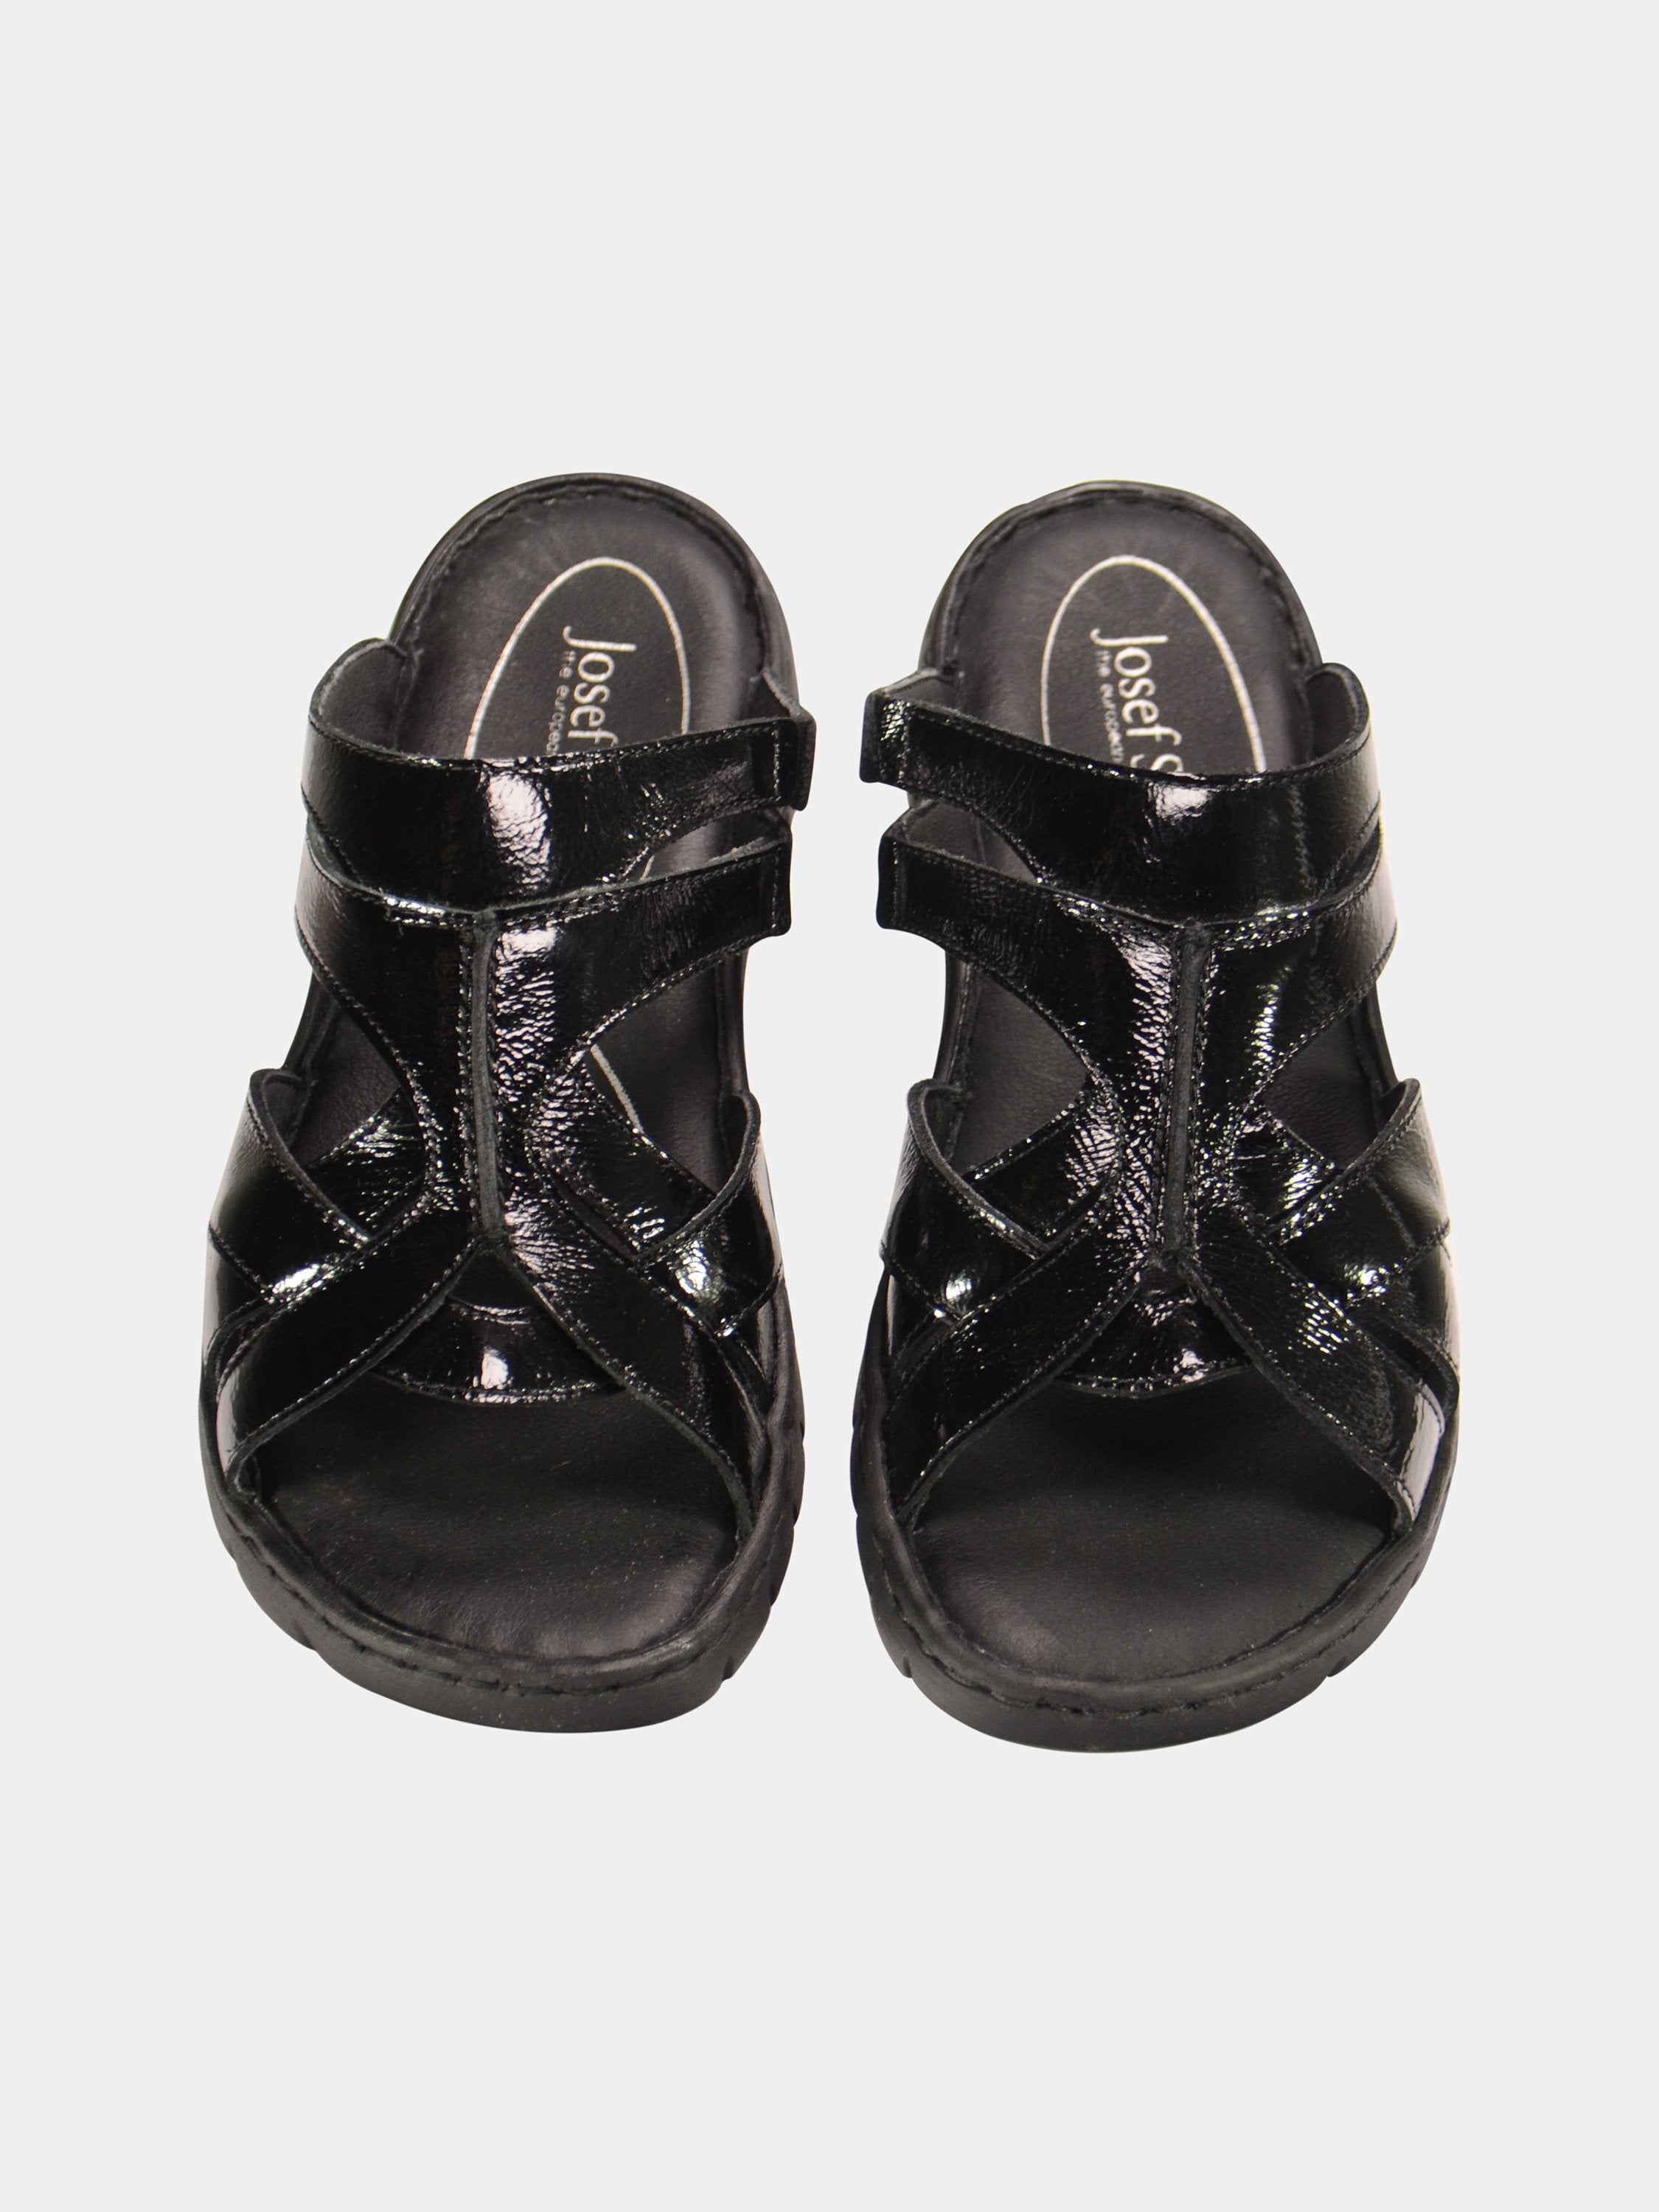 Josef Seibel Women's Patent Leather Slider Sandals #color_Black